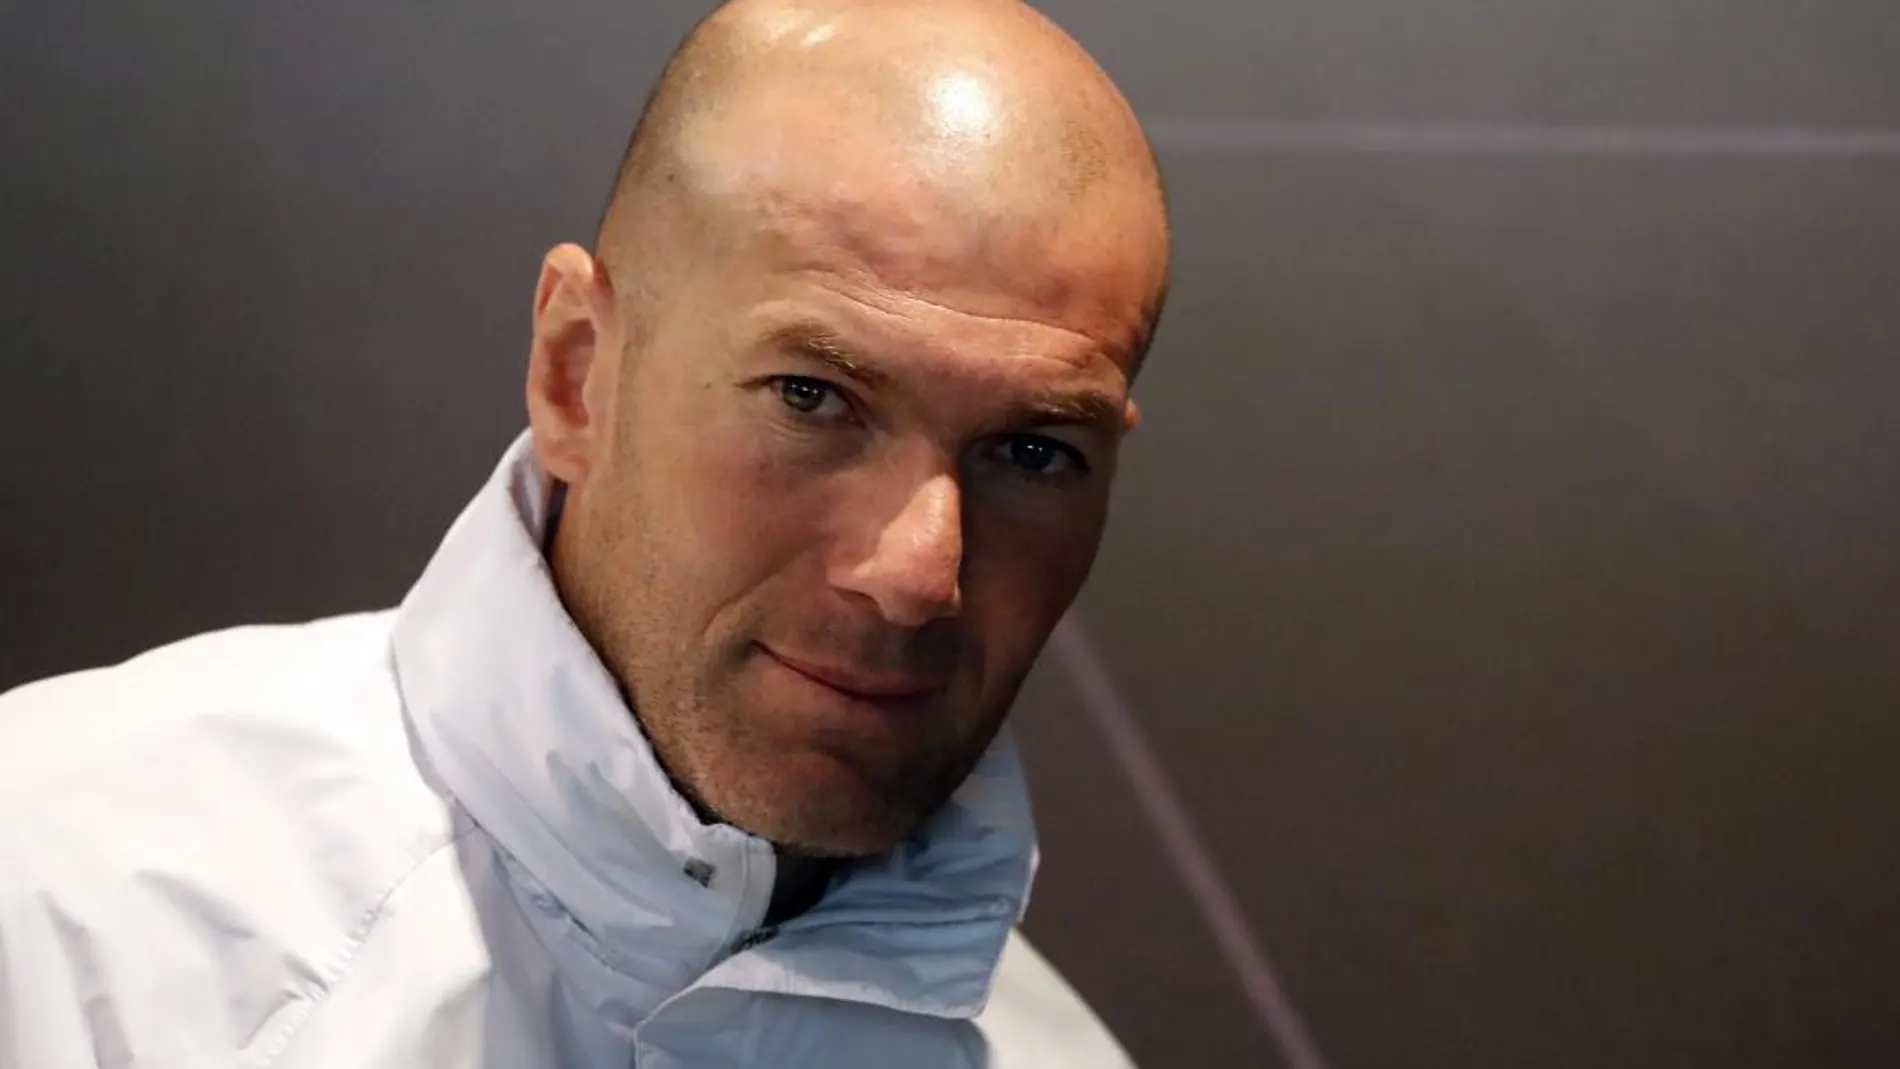 El entrenador del Real Madrid, Zinedine Zidane, durante la rueda de prensa